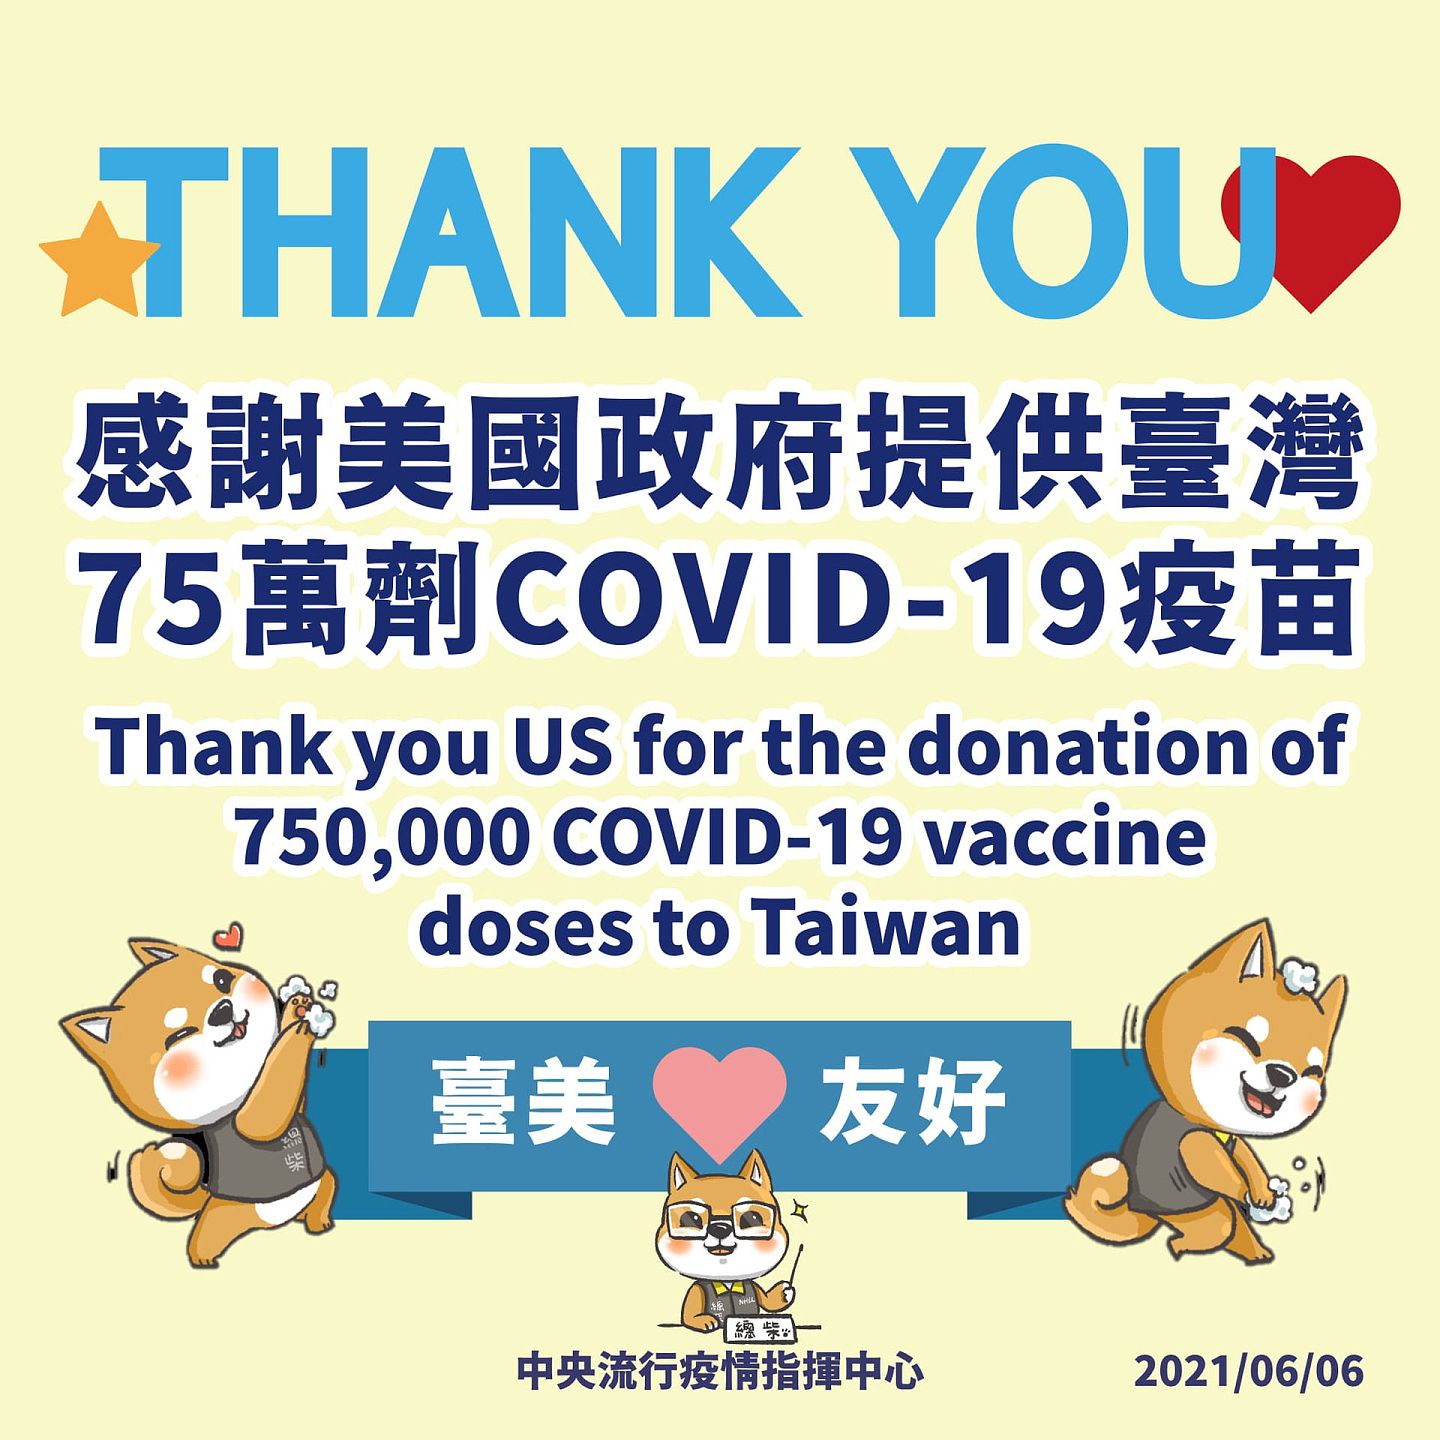 美国宣布捐台75万剂疫苗，台湾疫情指挥中心特别制作图片宣传台美友好。（Facebook@疾病管制署-1922防疫达人）